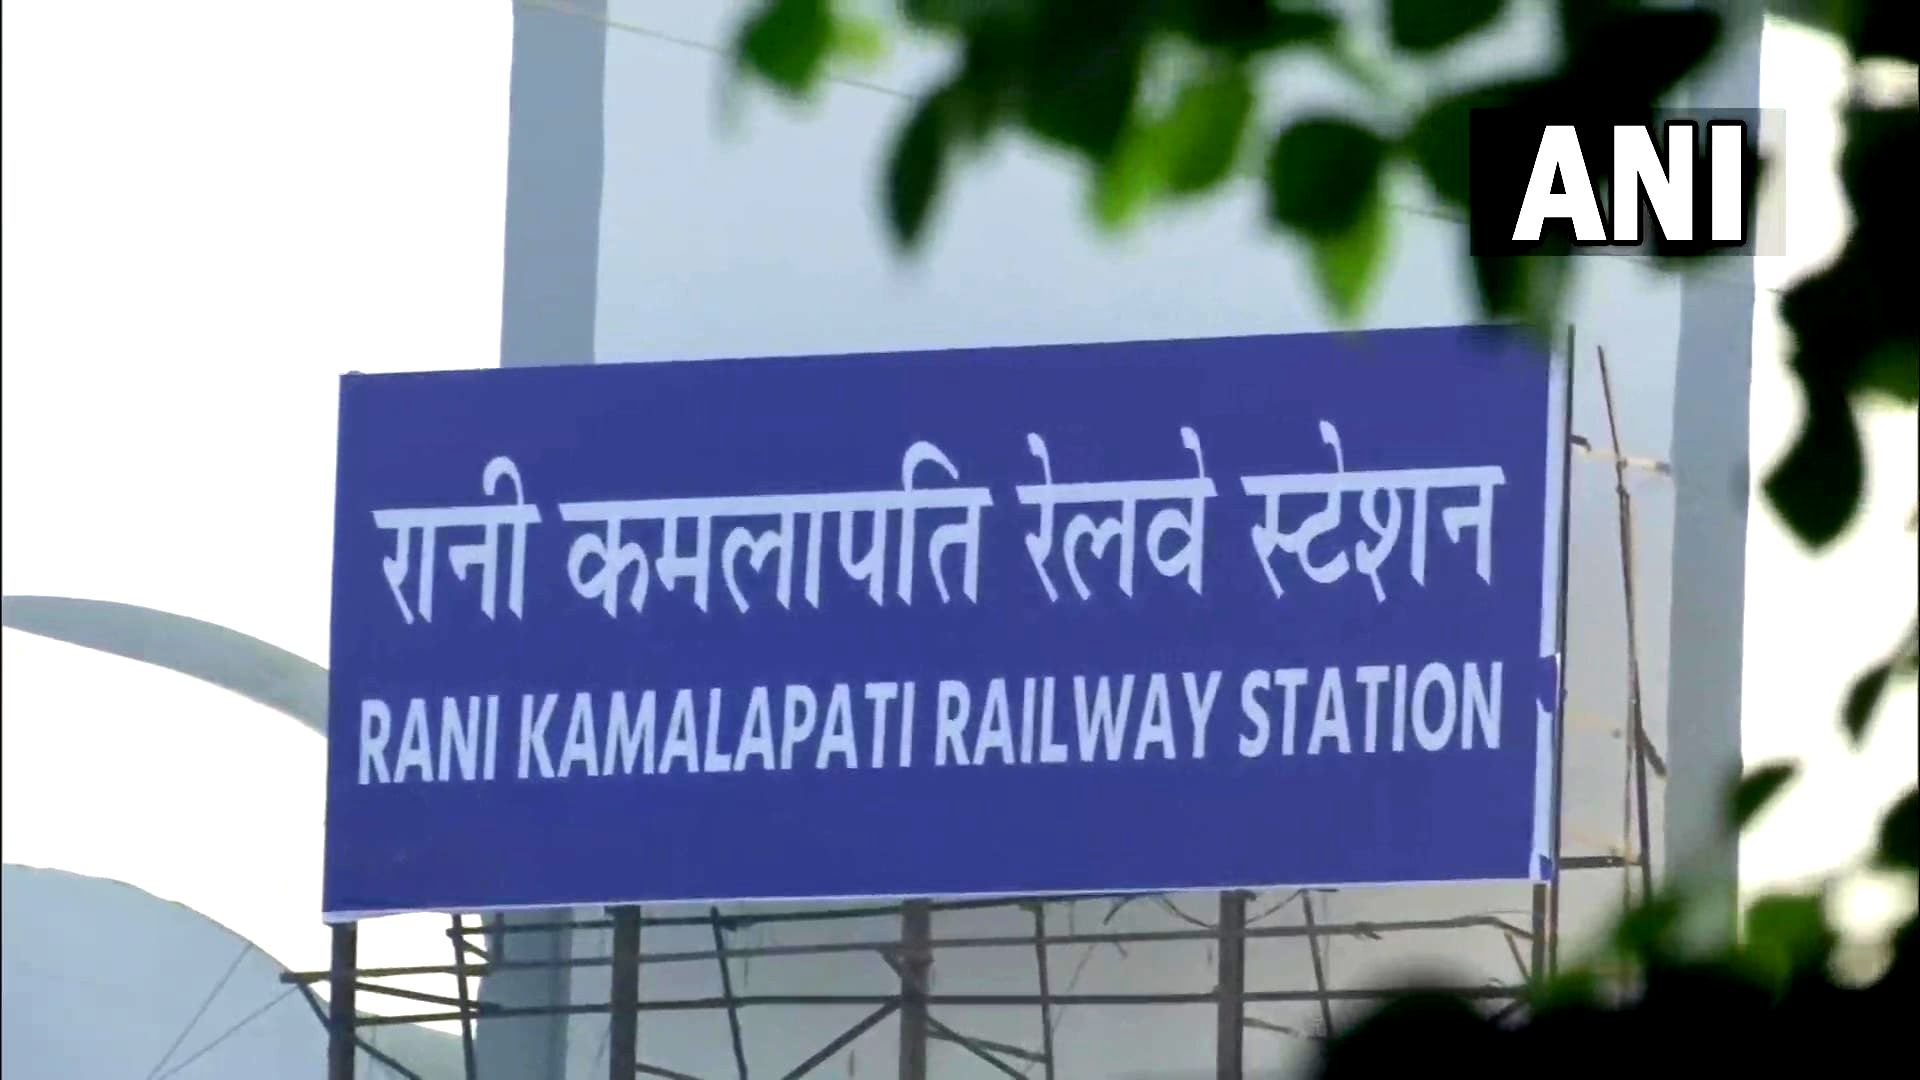 लोगों को गुमराह करने के लिए भाजपा ने हबीबगंज स्टेशन का नाम रानी कमलापति किया: कांग्रेस सांसद